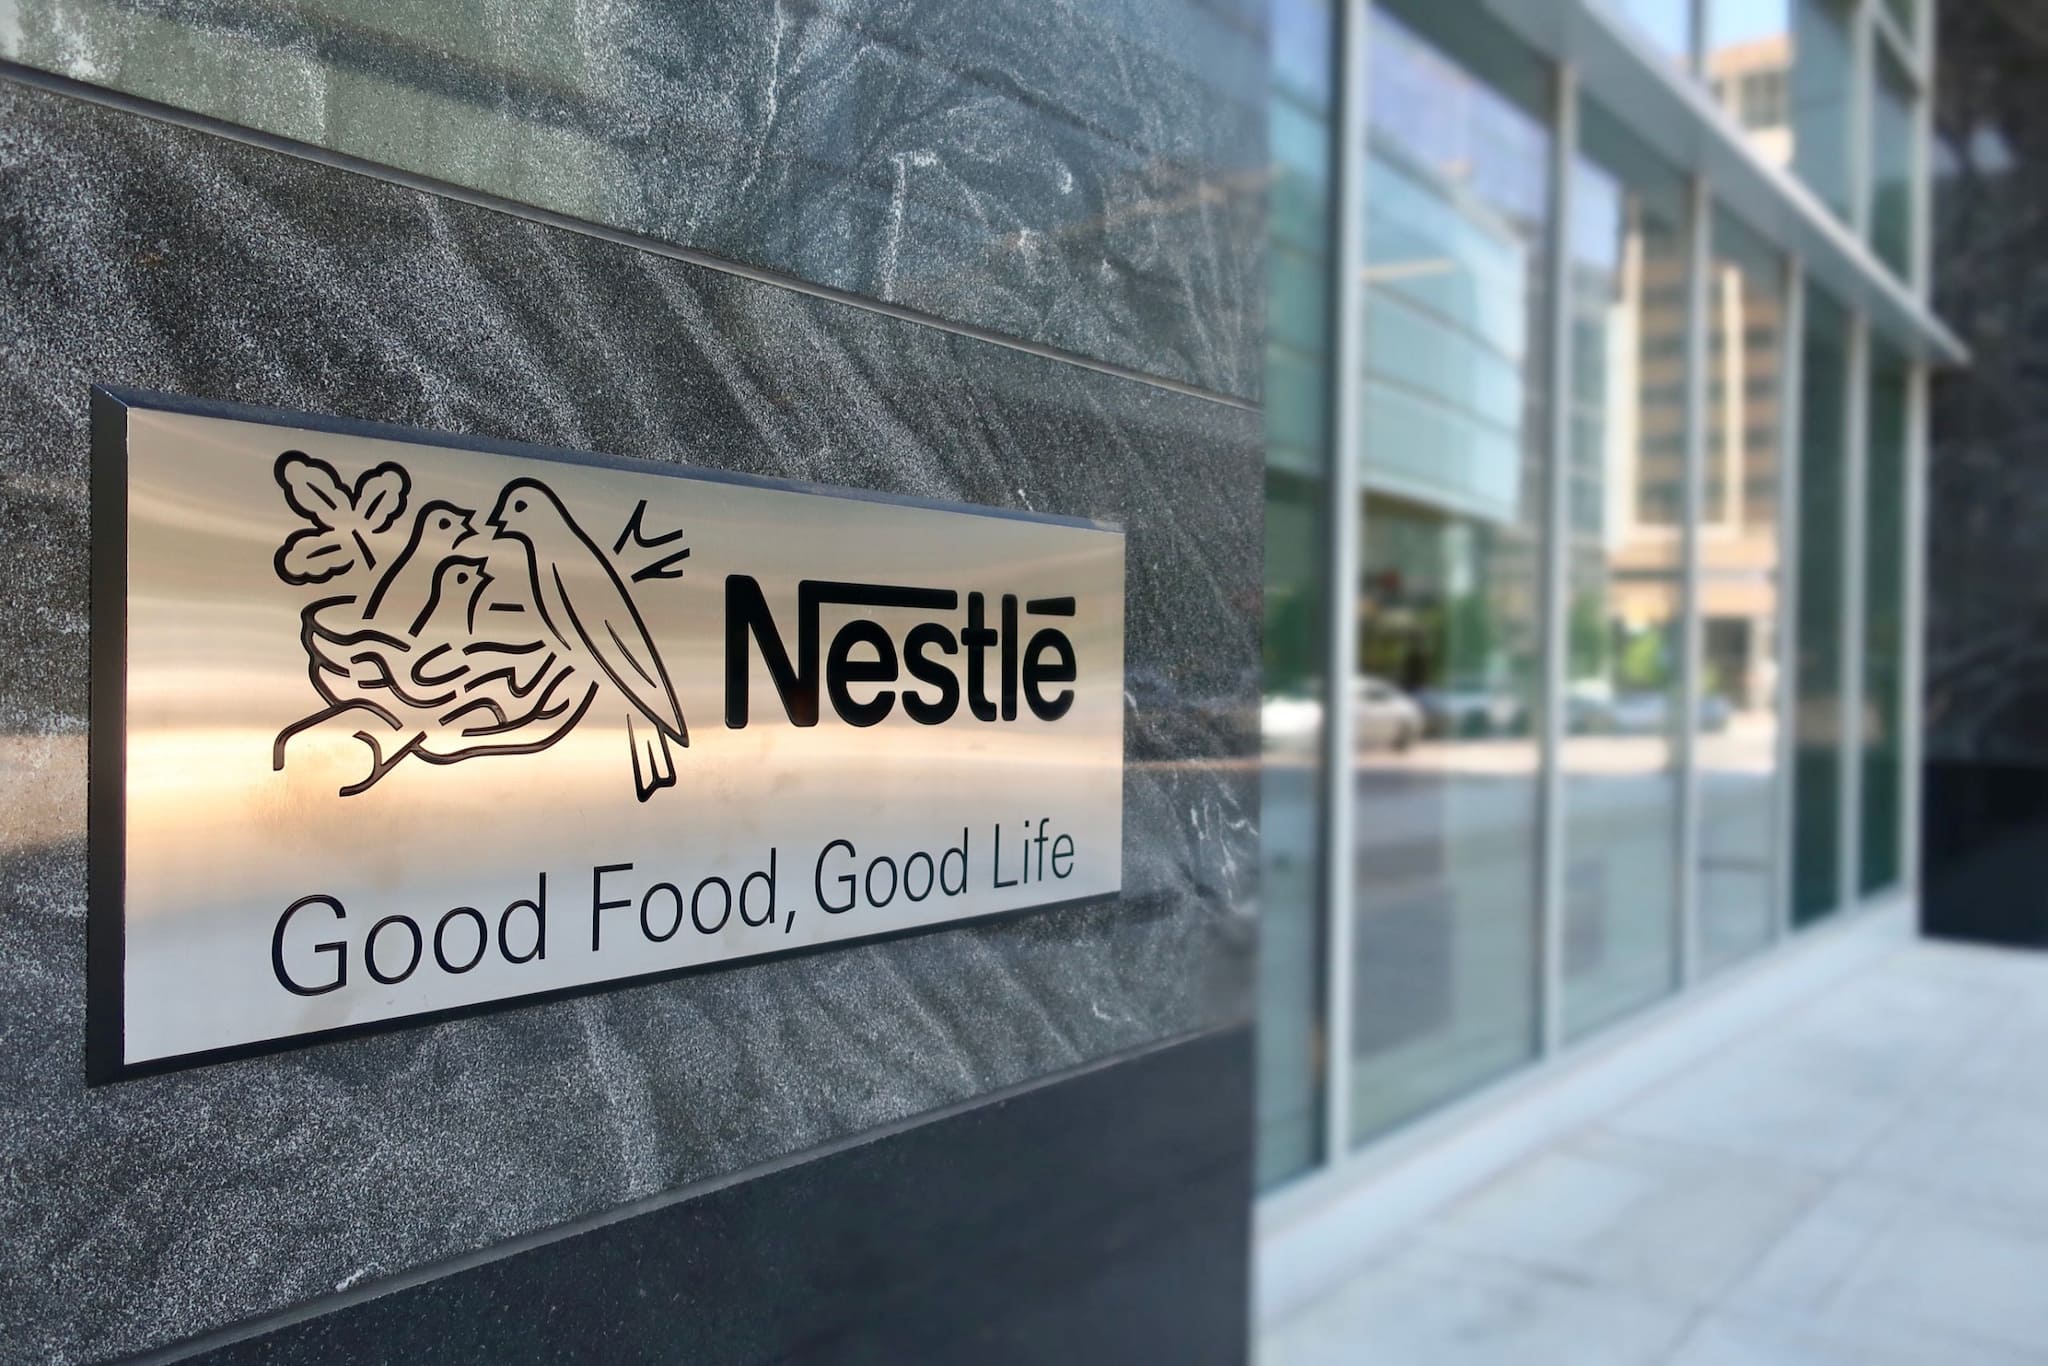 Nestlé launches direct-to-consumer platform MyNestlé